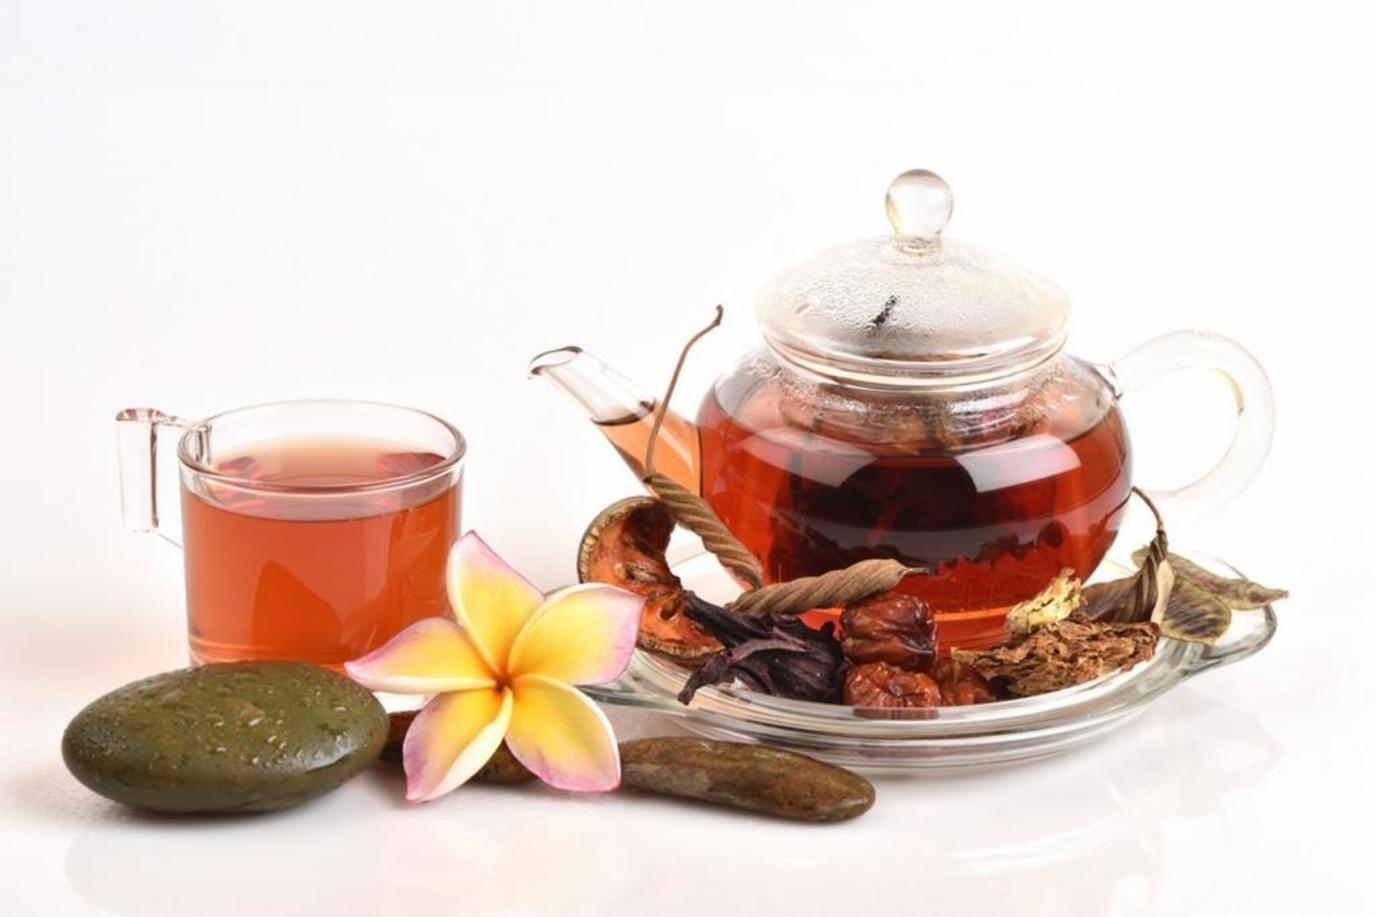 أنواع الشاي المساعدة للـ رجيم الغذائي مجلة سيدتي